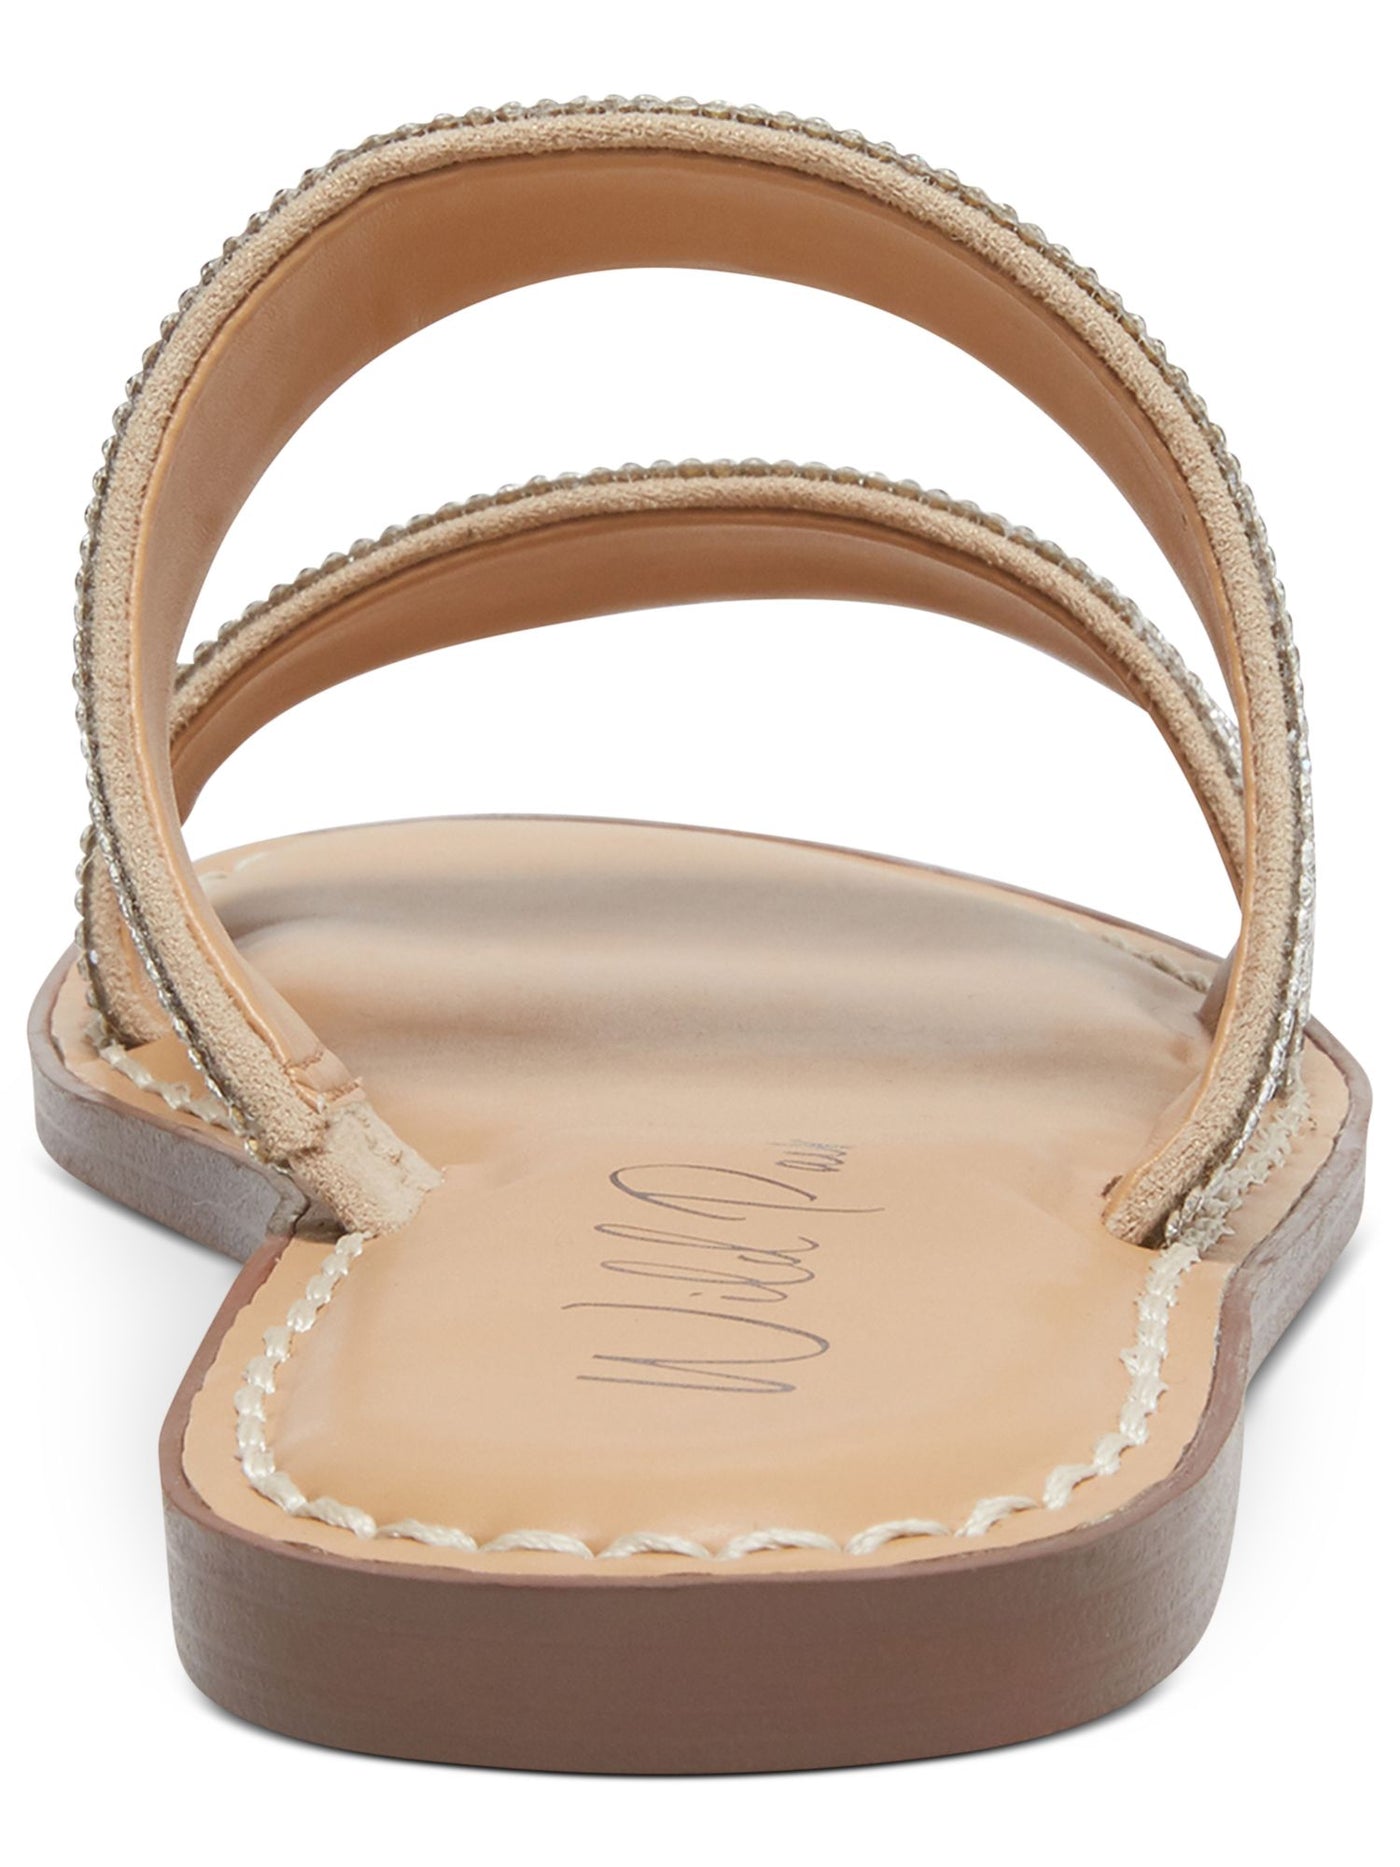 WILD PAIR Womens Silver Rhinestone Ginnie Round Toe Slip On Slide Sandals Shoes 10.5 M